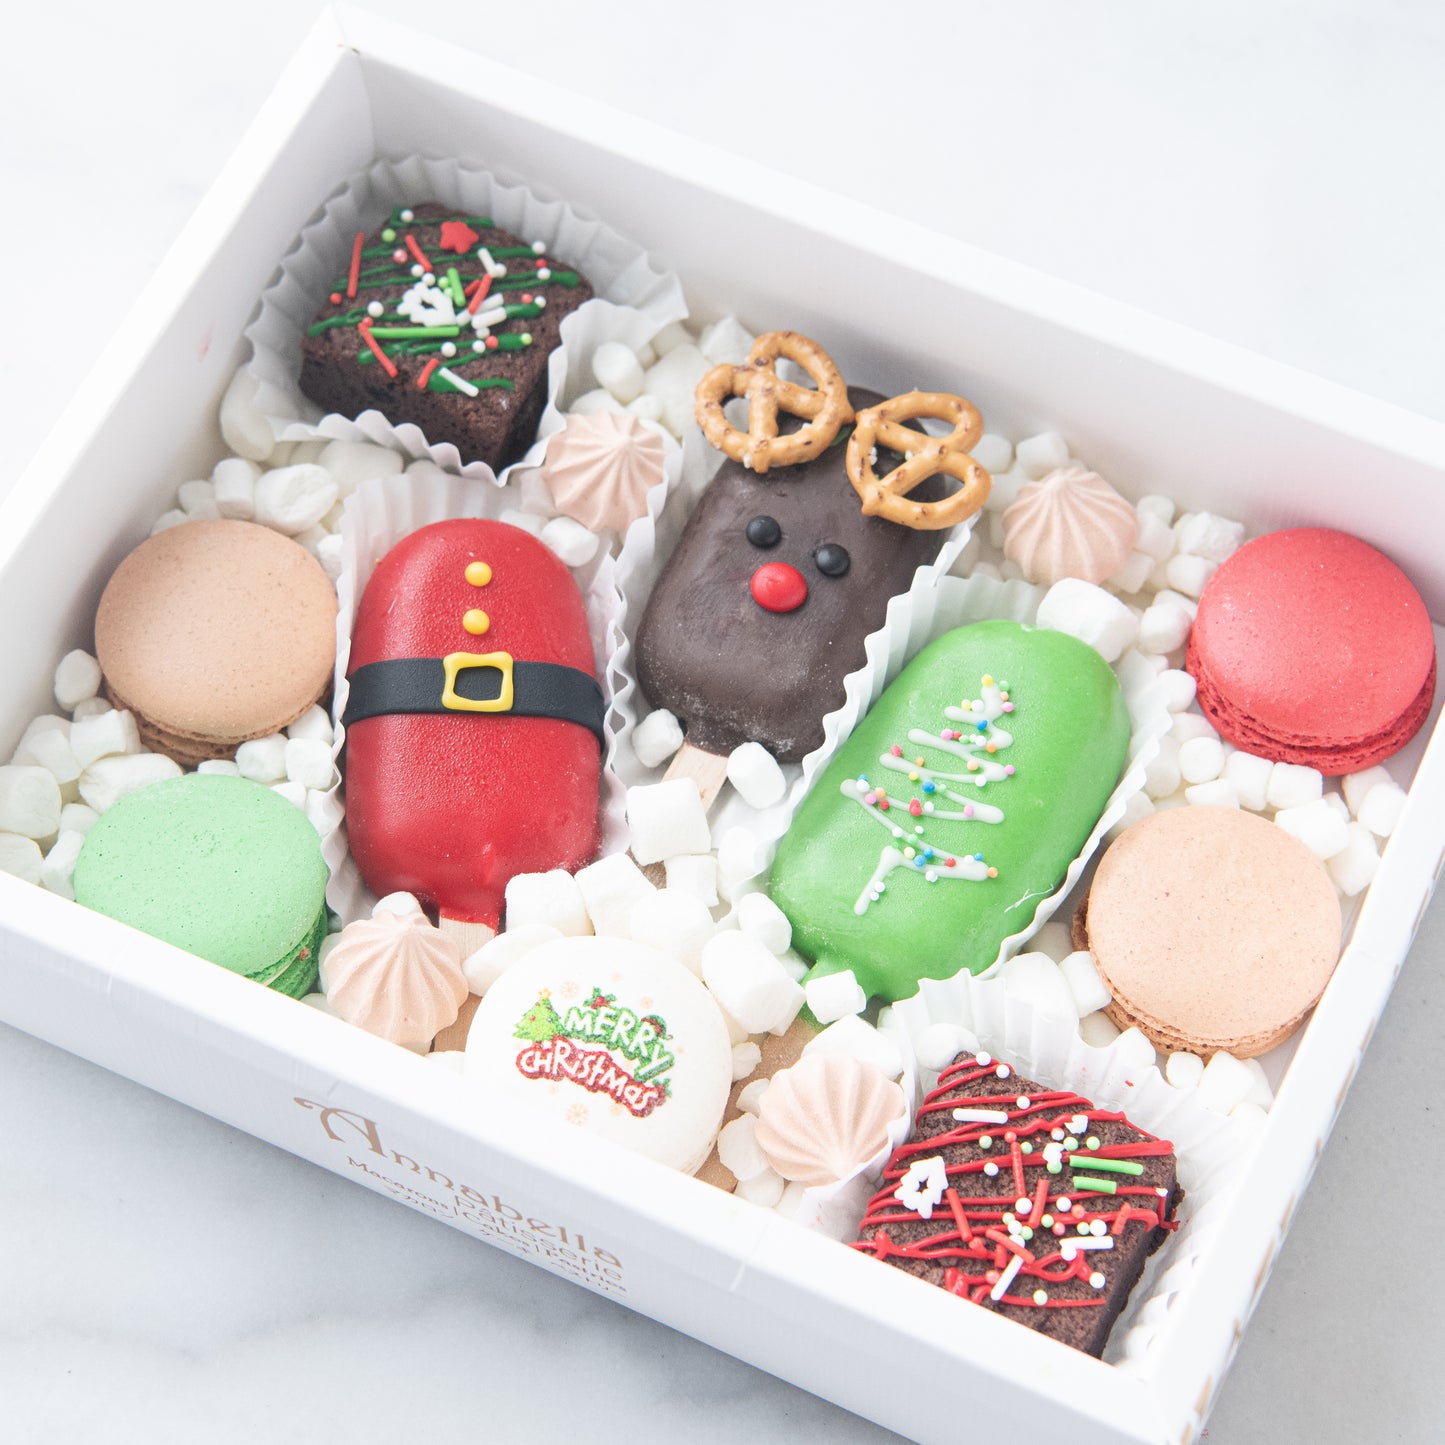 Ho ho ho! | Merry Christmas | A Joyful Season Cakesicles | $43.80